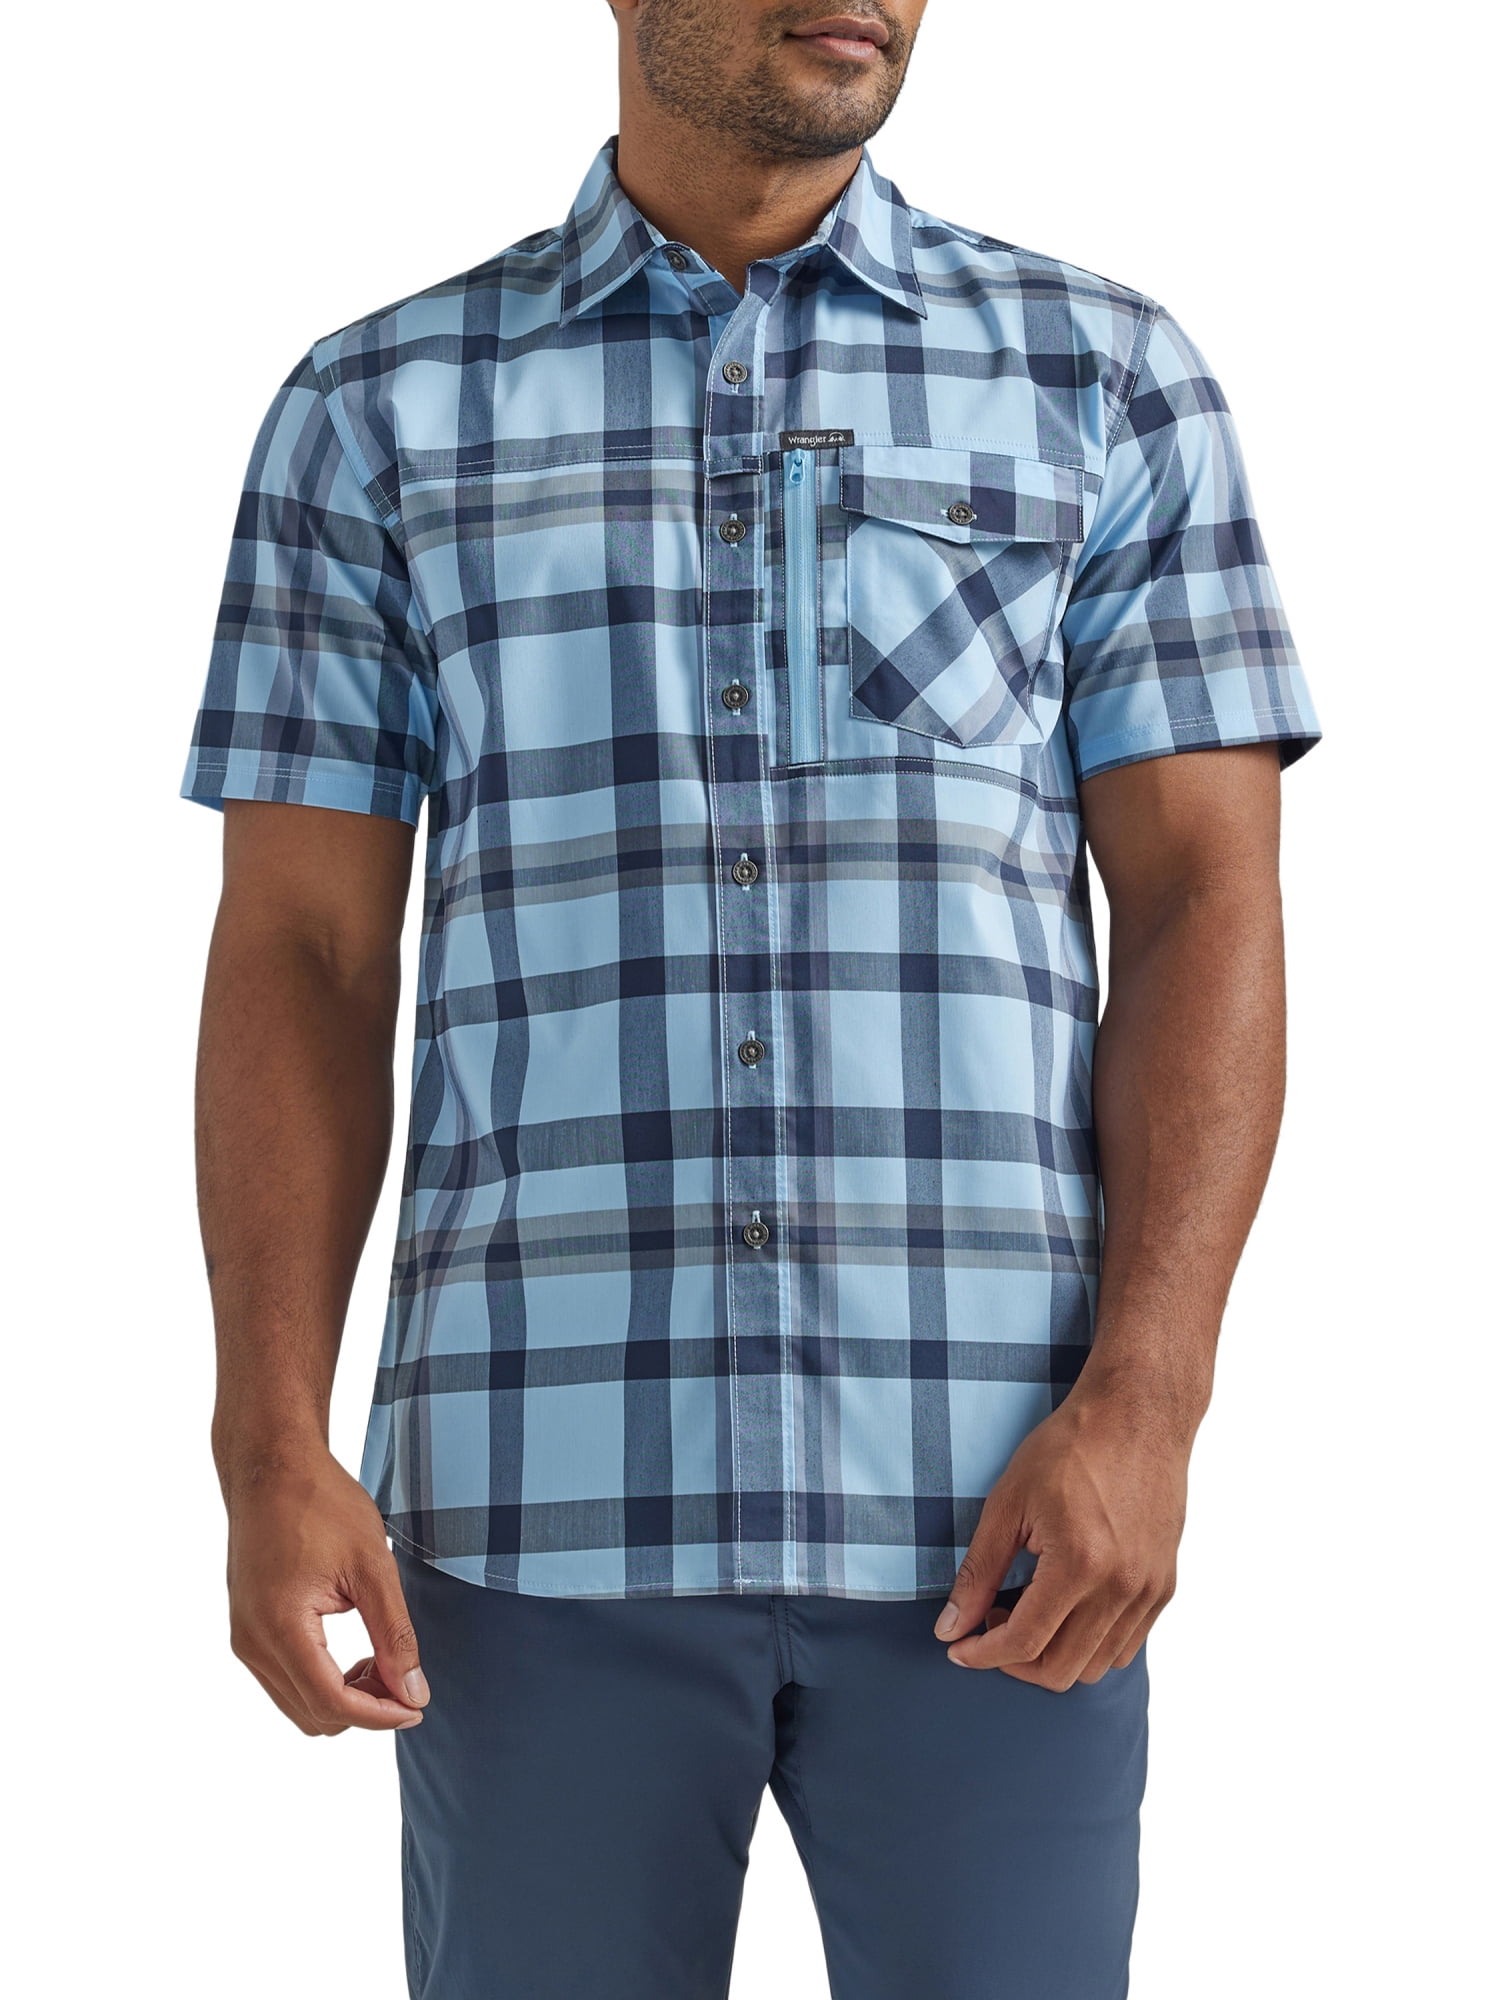 Wrangler Men's Outdoor Short Sleeve Zip Pocket Shirt with UPF 40